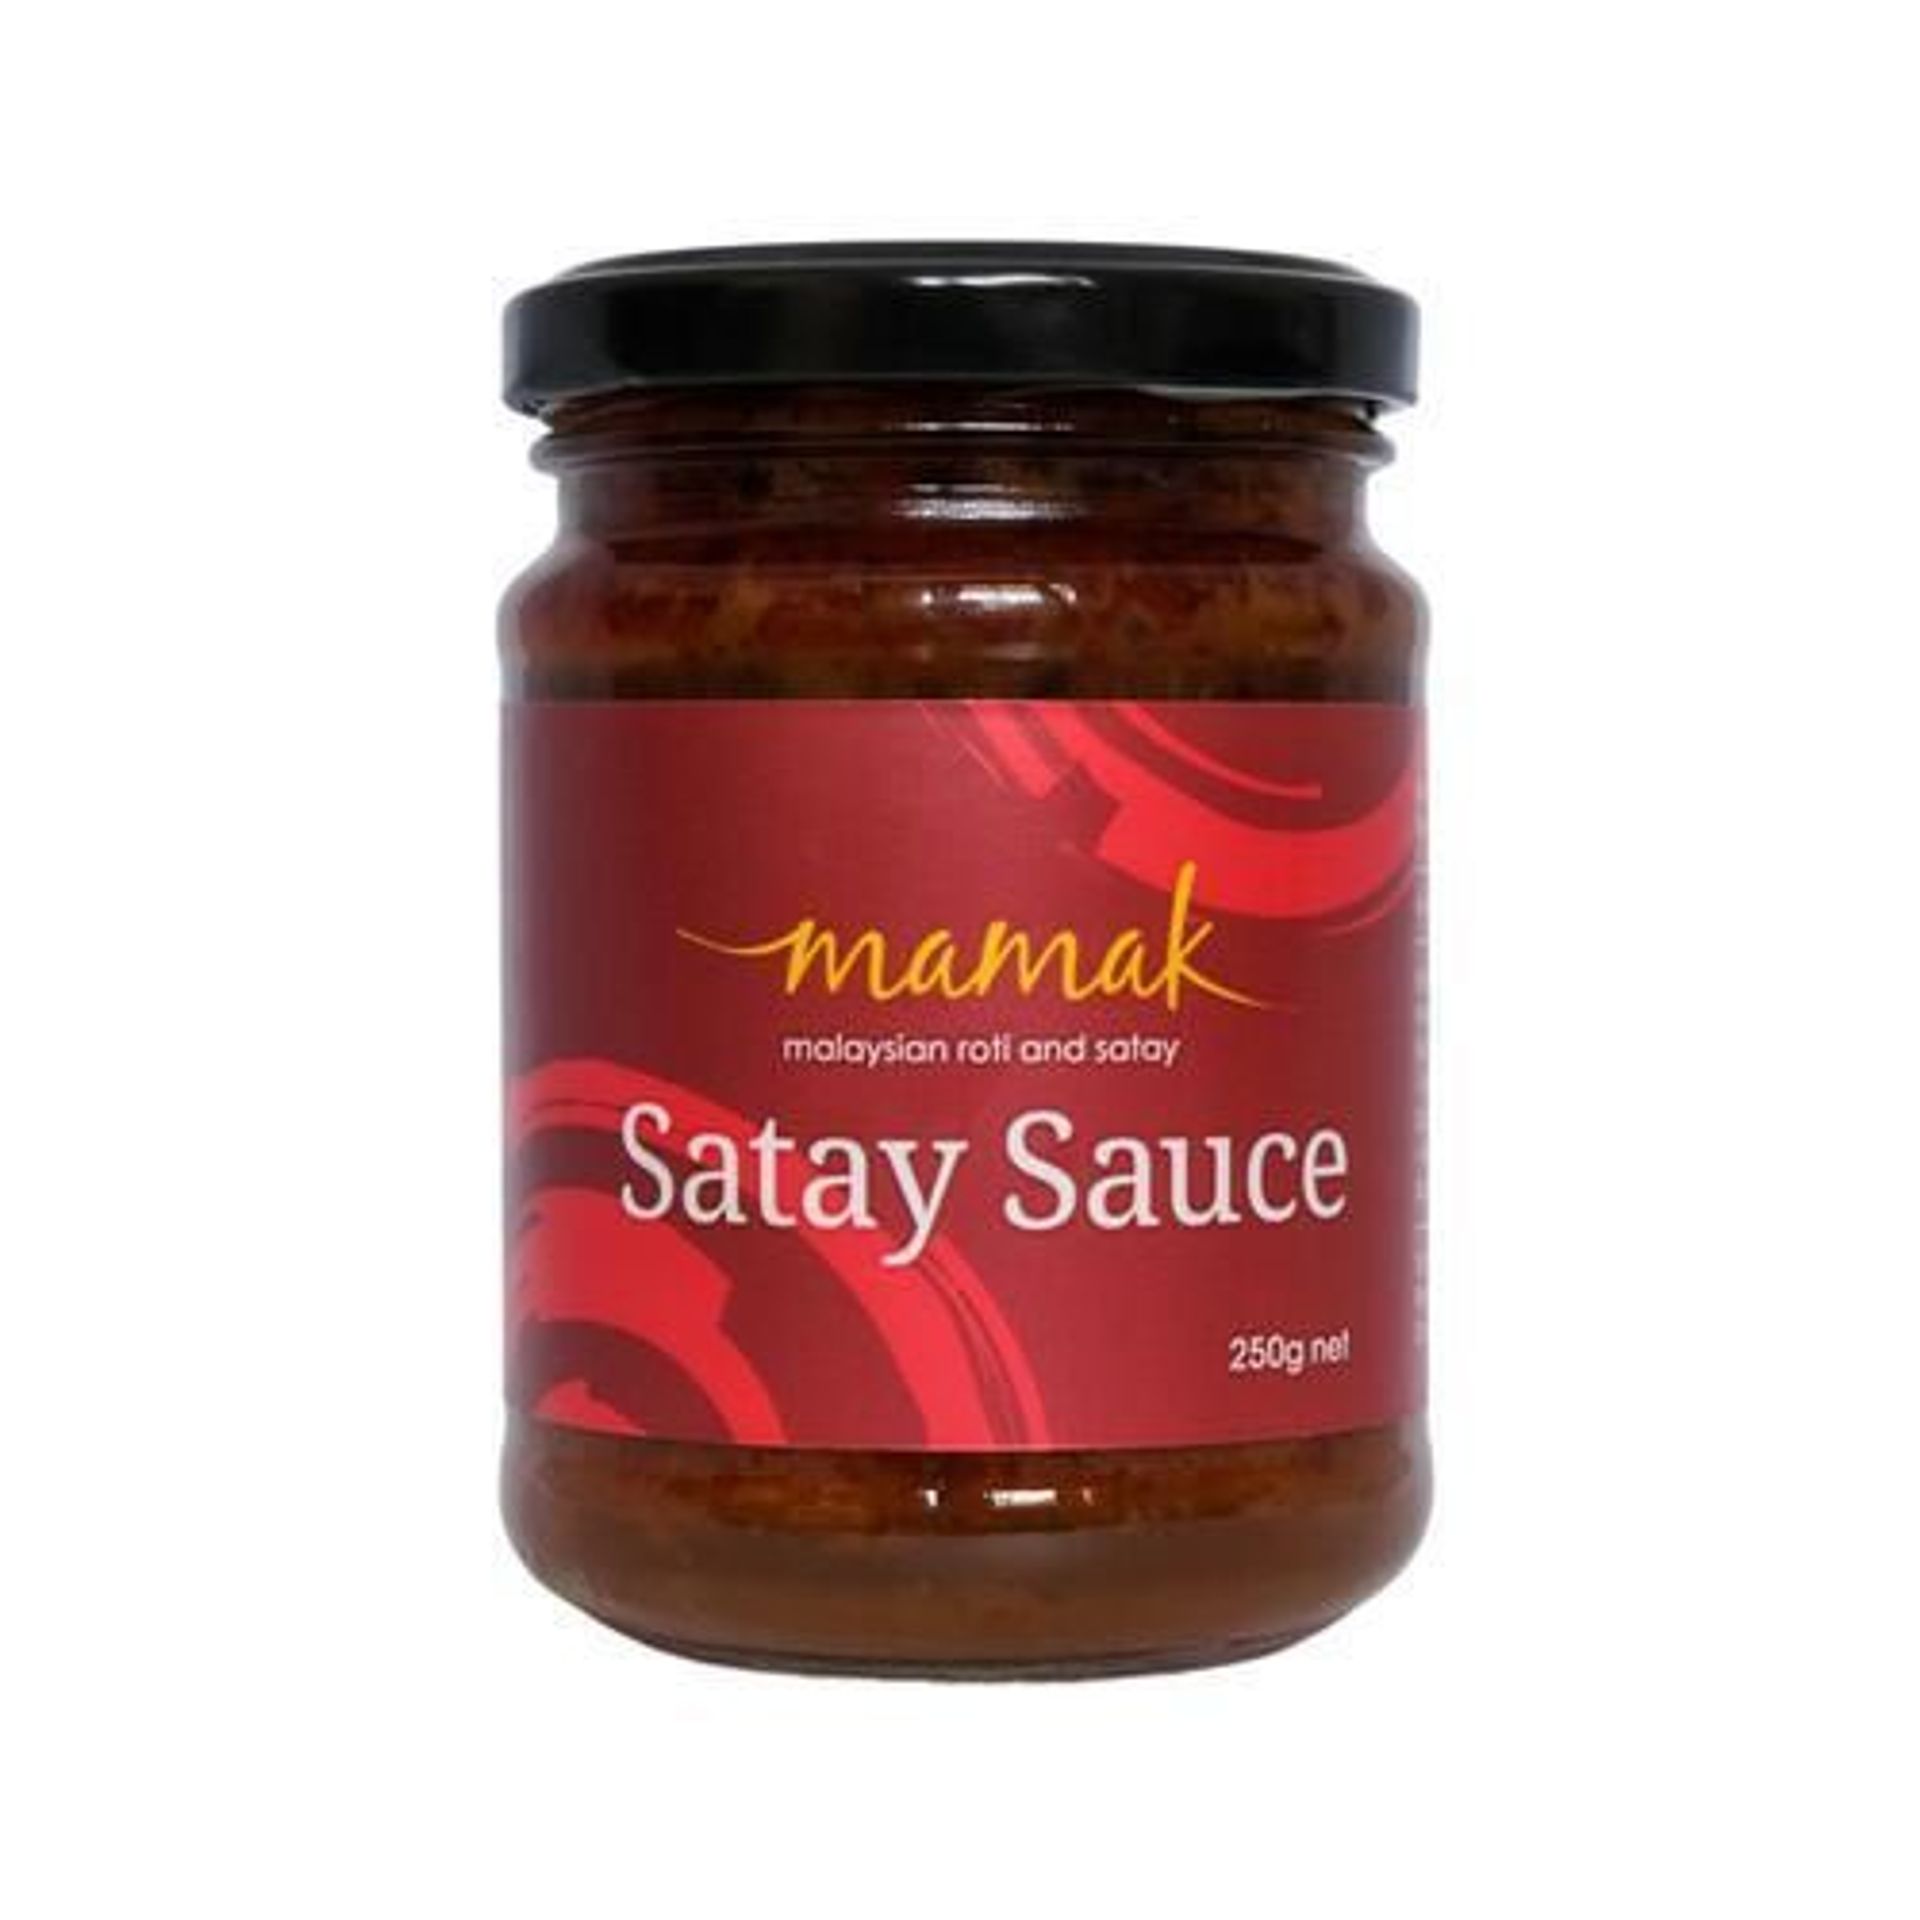 Satay Sauce - 250g jar